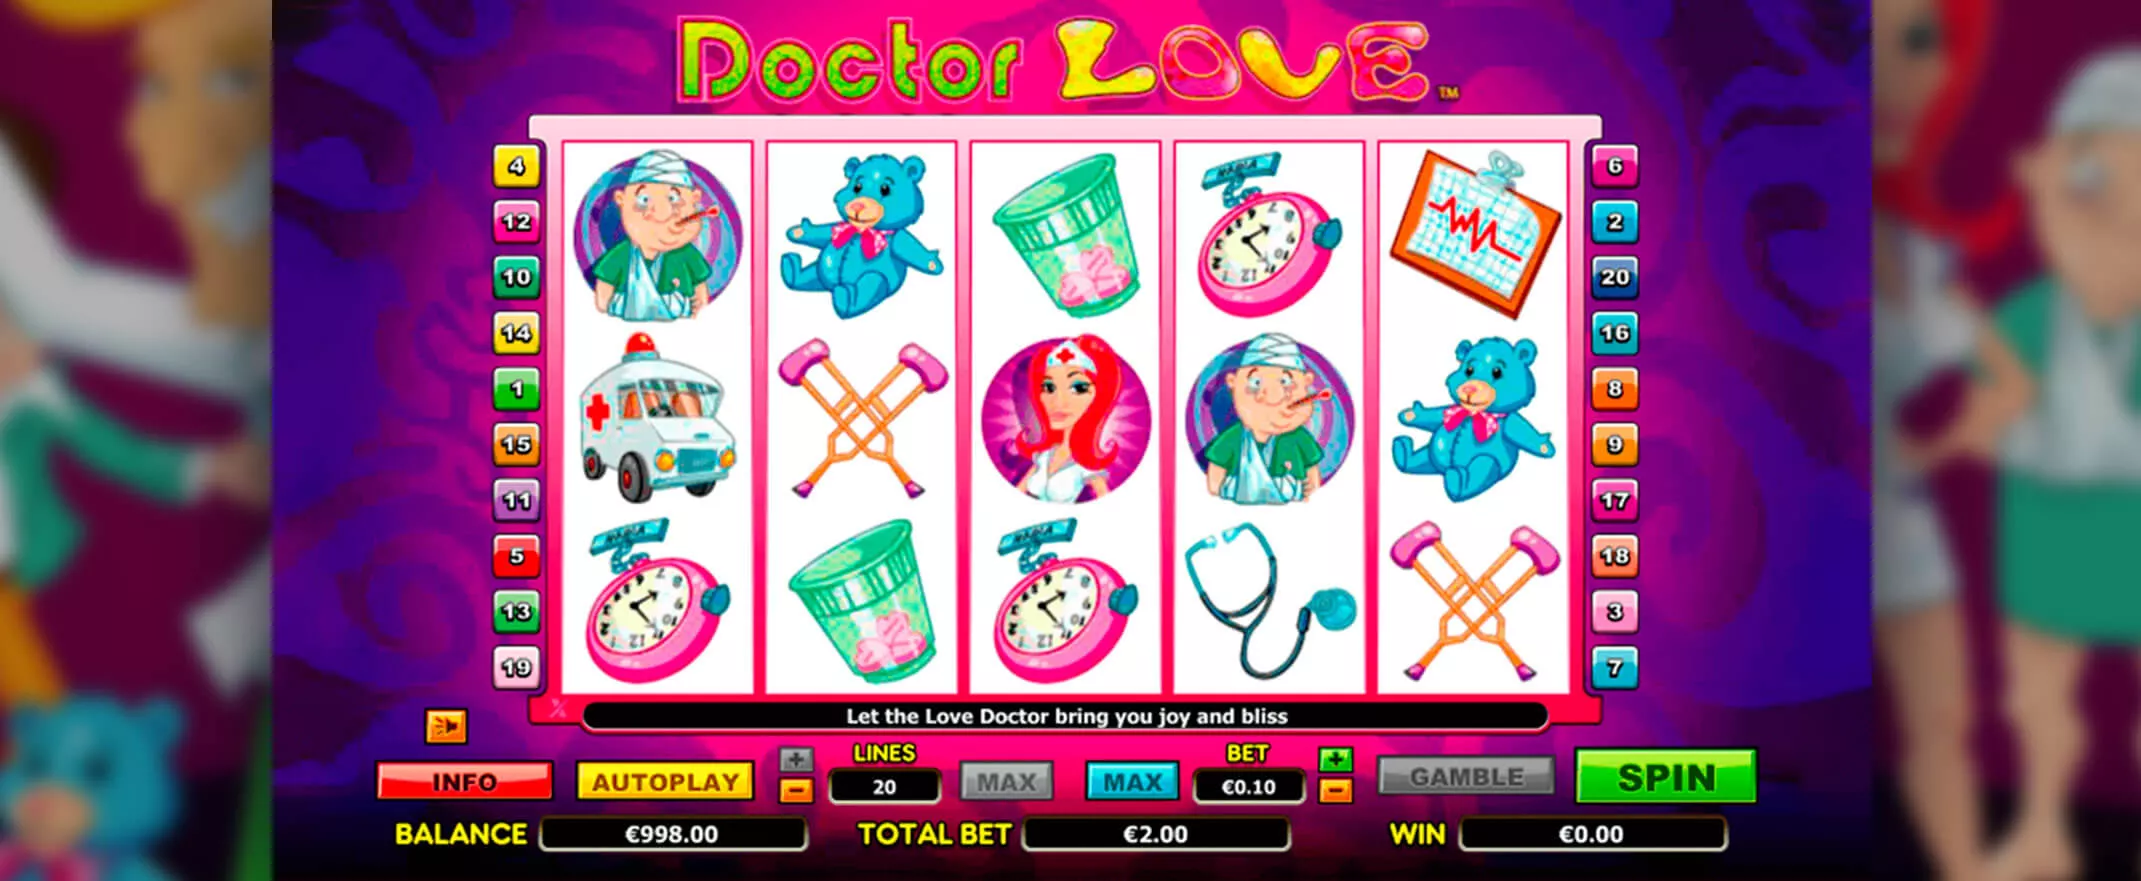 Doctor Love peliautomaatti - kuva pelin keloista ja symboleista